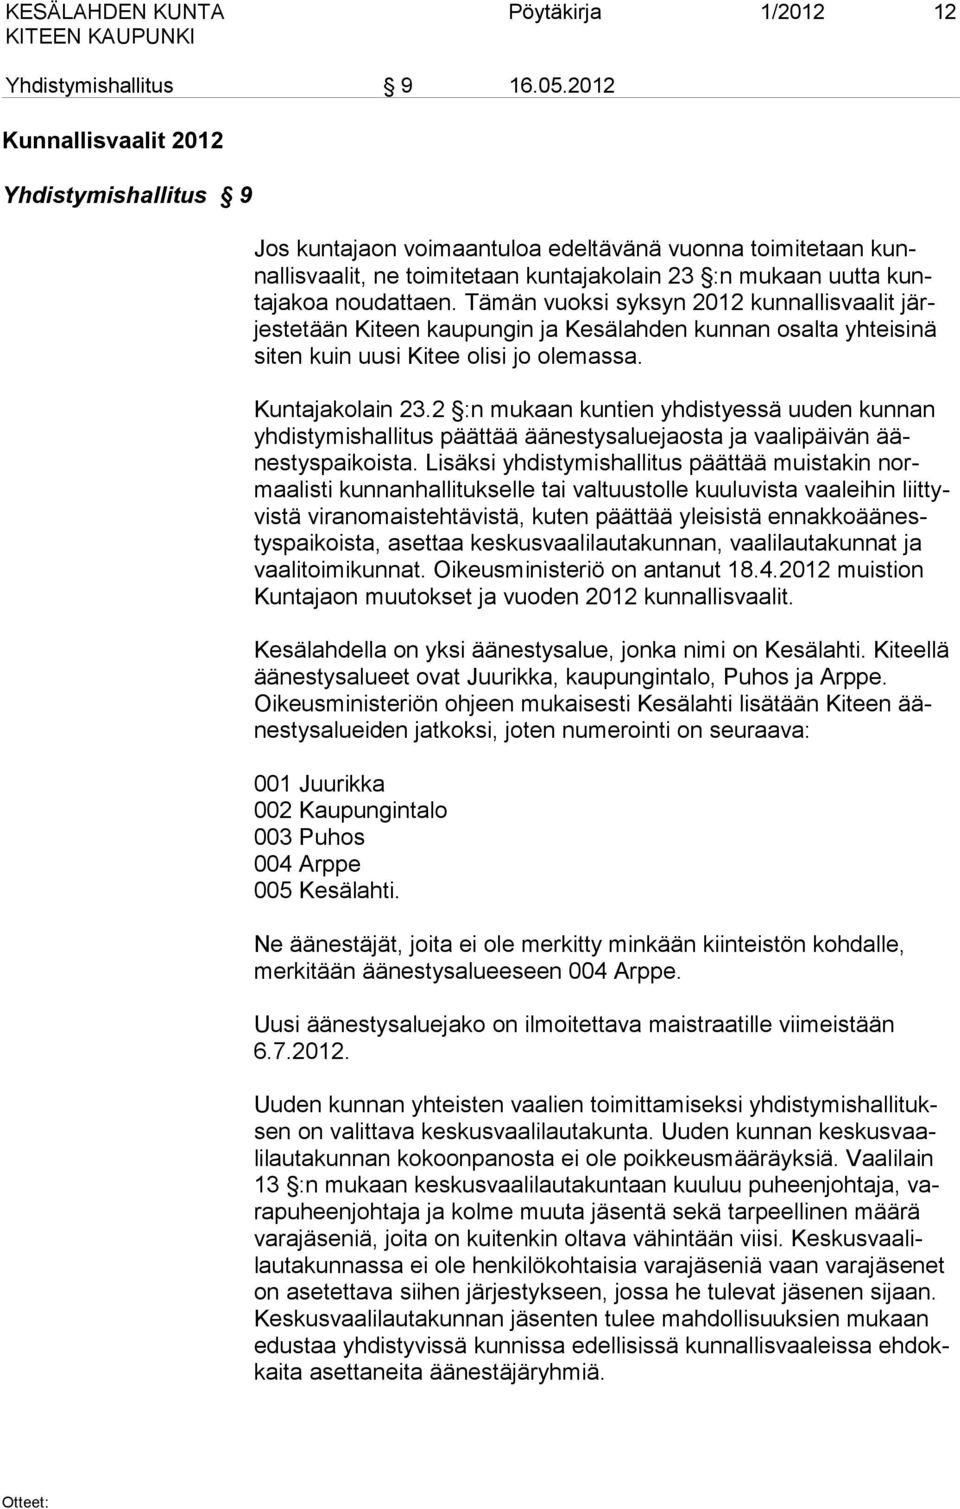 Tämän vuoksi syksyn 2012 kunnallisvaalit järjestetään Kiteen kaupungin ja Kesälahden kunnan osalta yhteisinä siten kuin uusi Kitee olisi jo olemassa. Kuntajakolain 23.